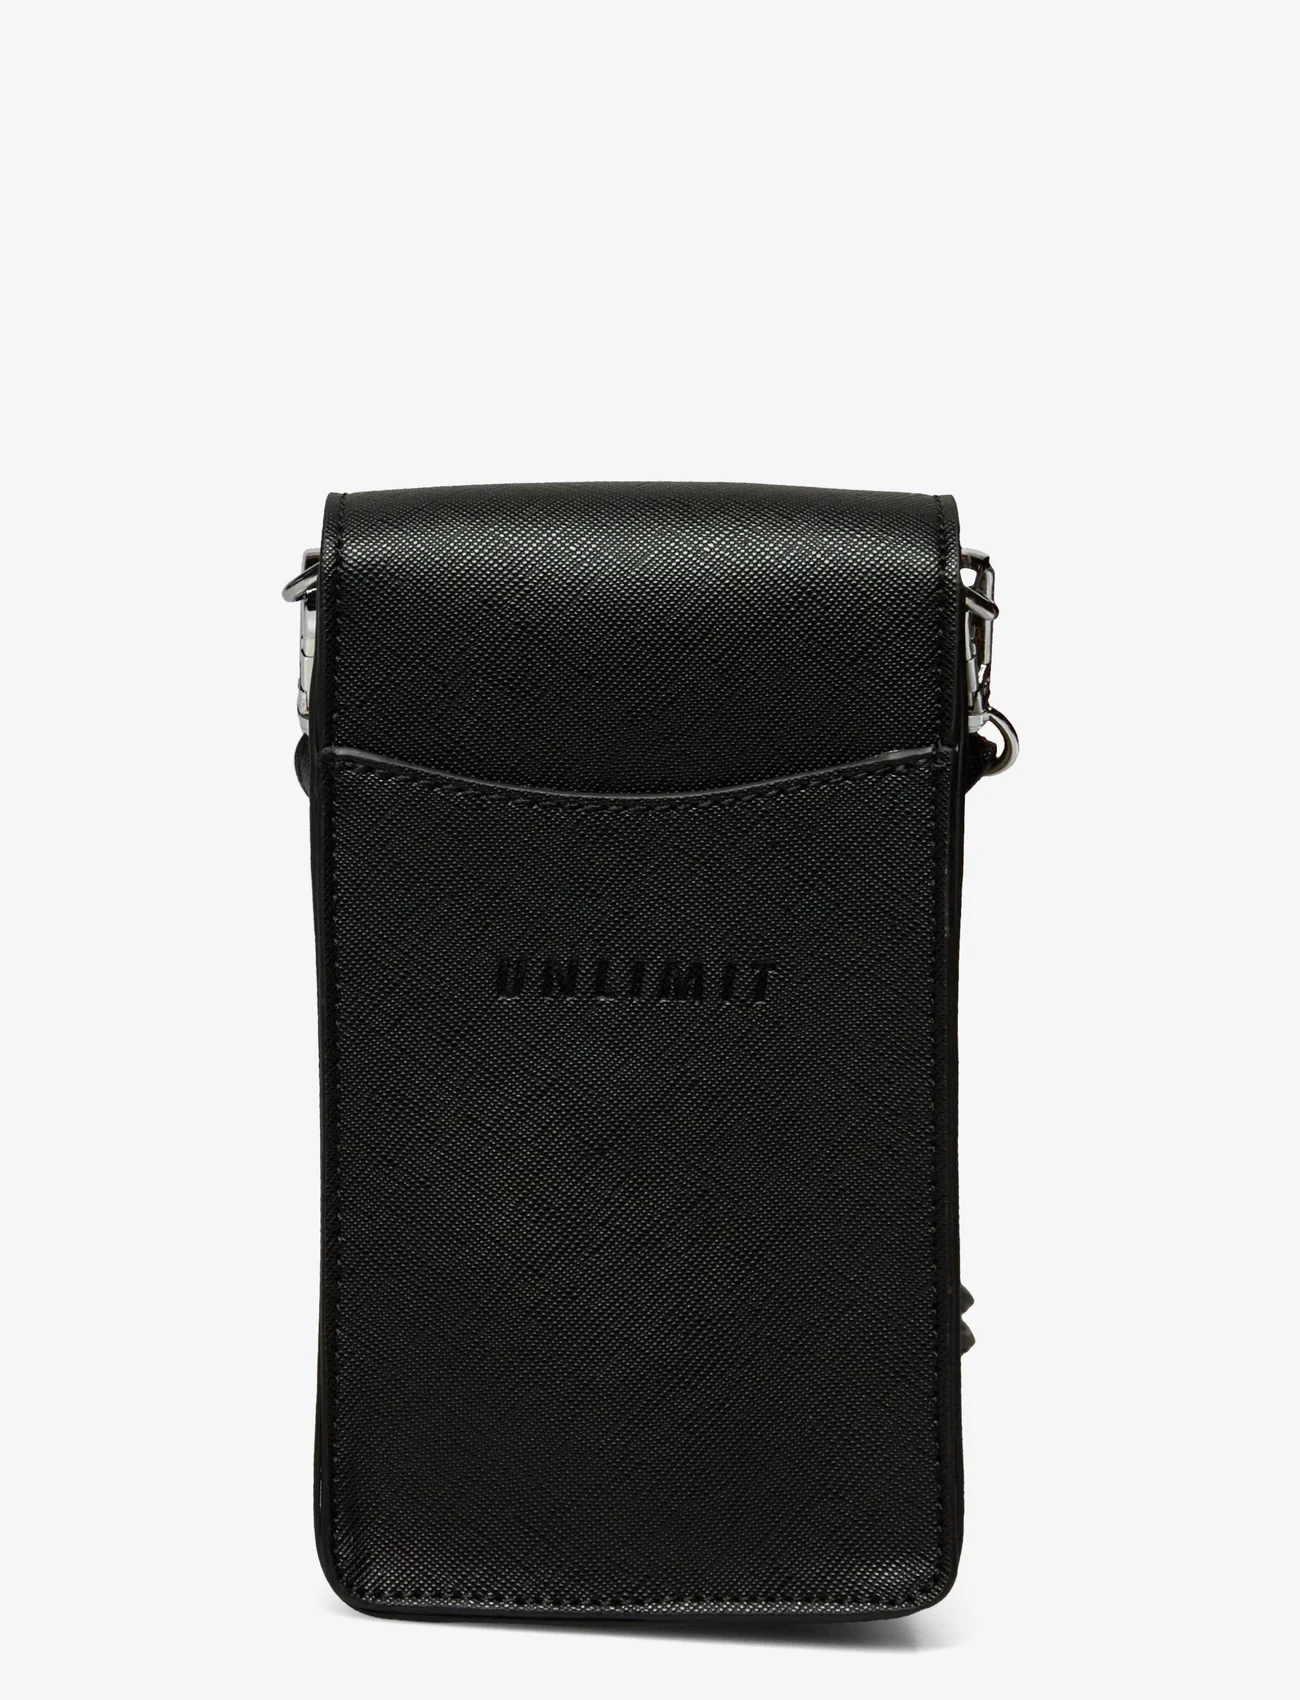 Unlimit - Unlimit mobile bag Faye - lowest prices - black - 1